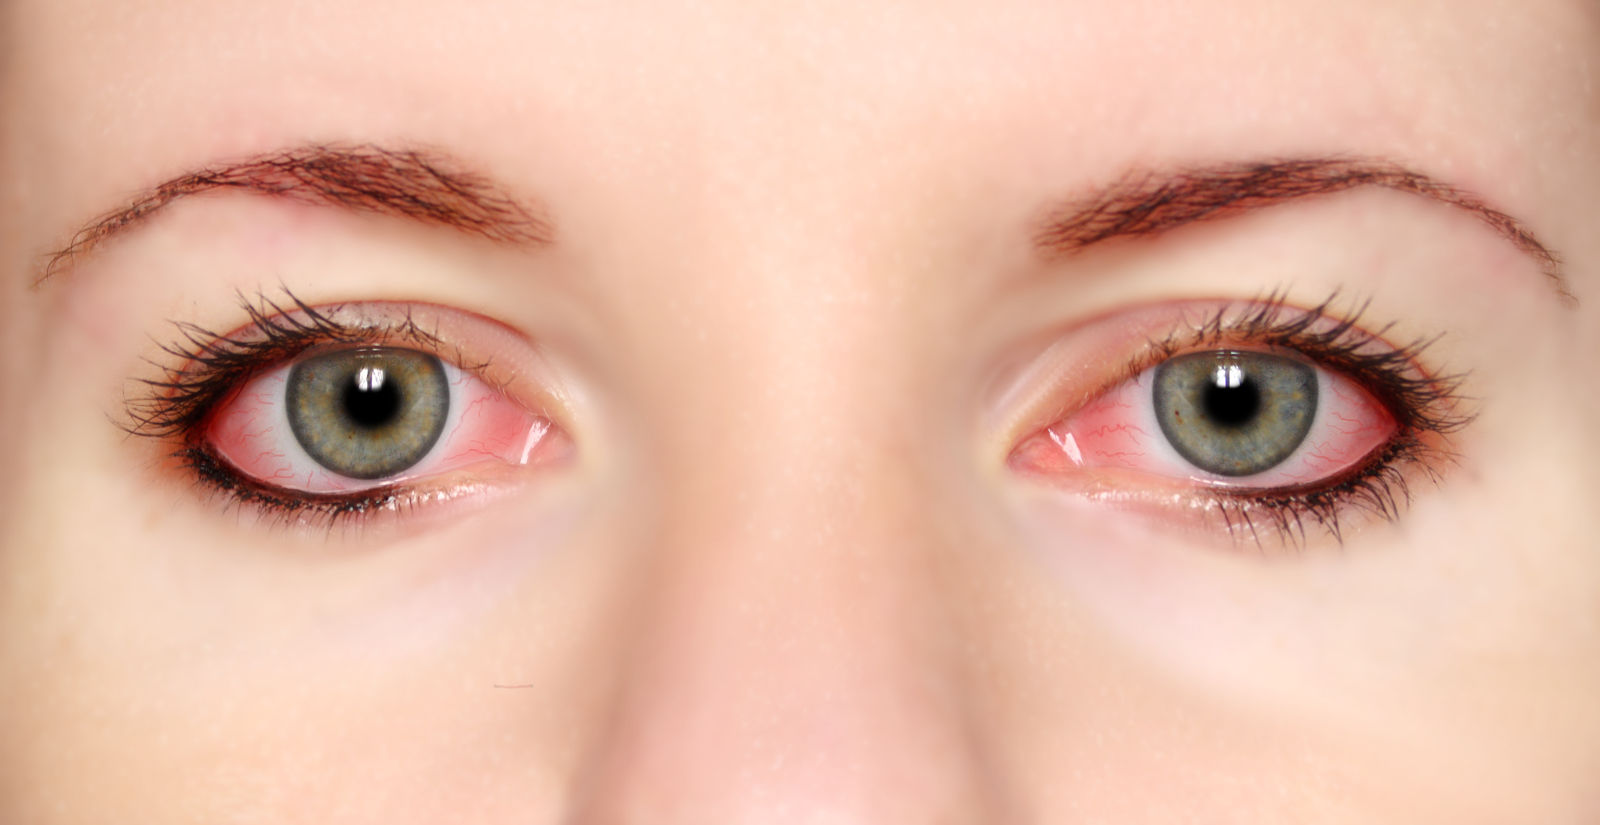 Detalle de dos ojos con conjuntivitis